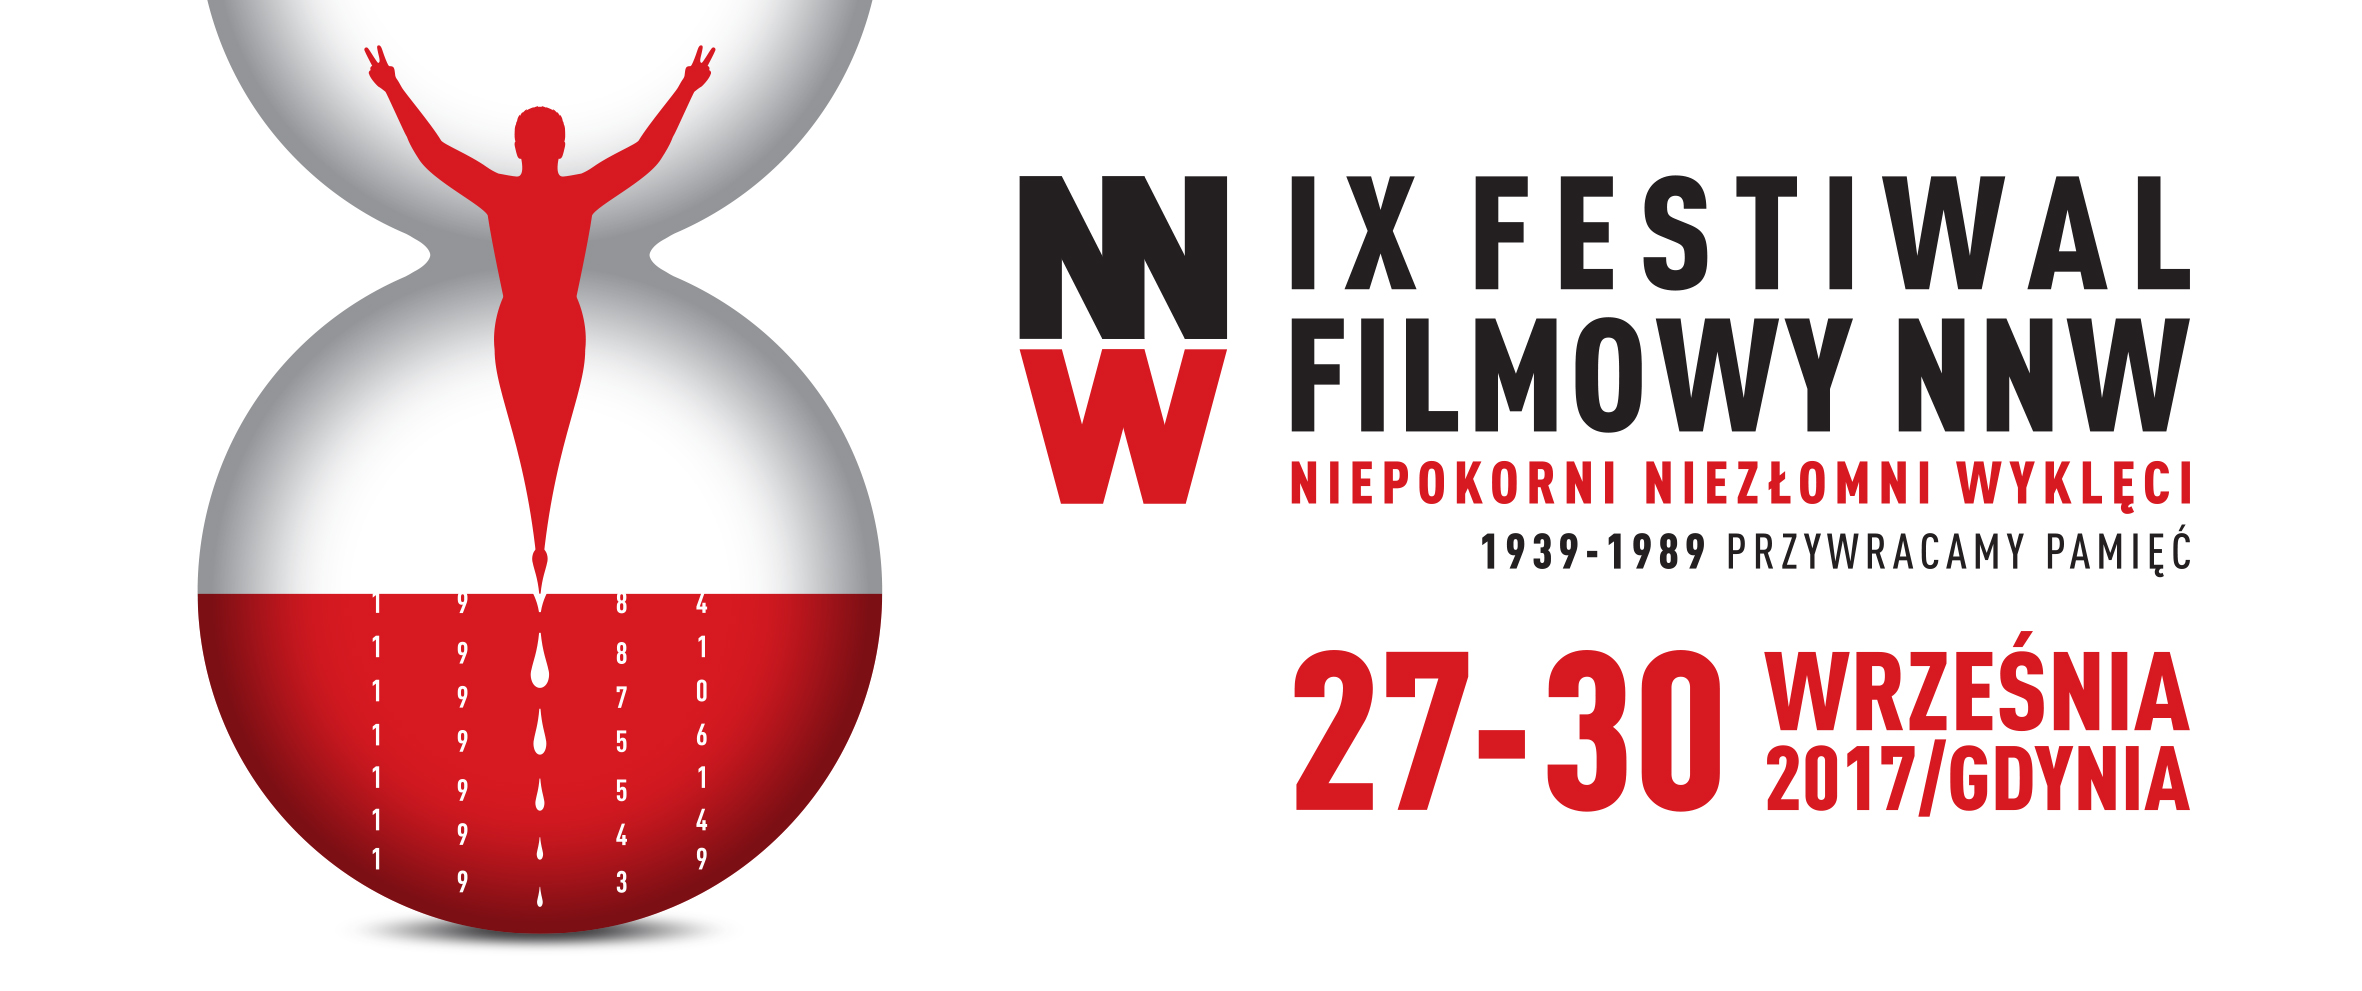 Festiwal Filmowy Niepokorni Niezłomni Wyklęci w Gdyni już po raz dziewiąty